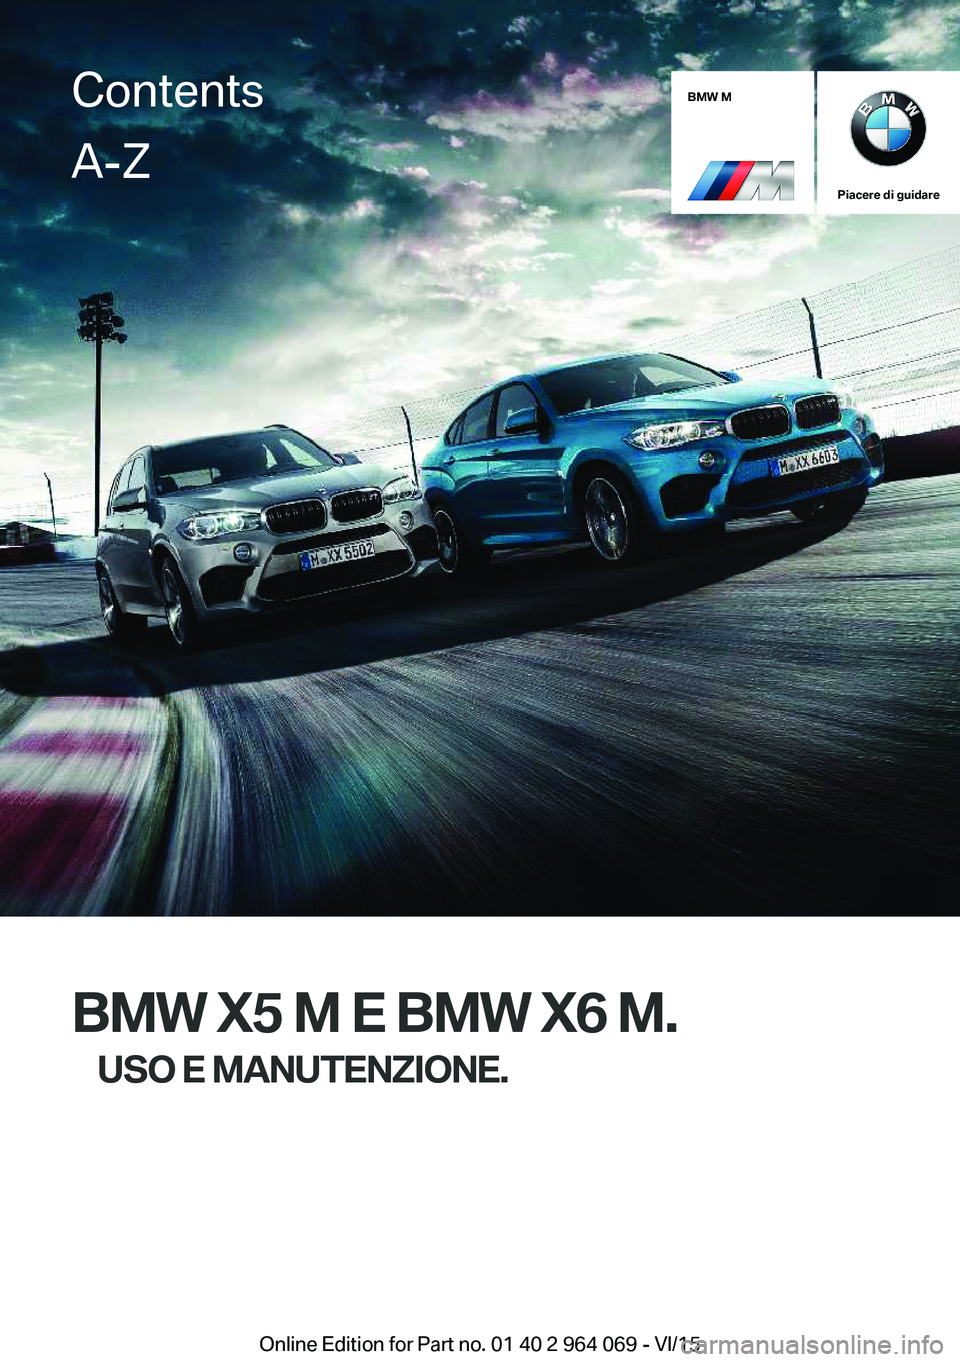 BMW X5 M 2016  Libretti Di Uso E manutenzione (in Italian) BMW M
Piacere di guidare
BMW X5 M E BMW X6 M.USO E MANUTENZIONE.
ContentsA-Z
Online Edition for Part no. 01 40 2 964 069 - VI/15   